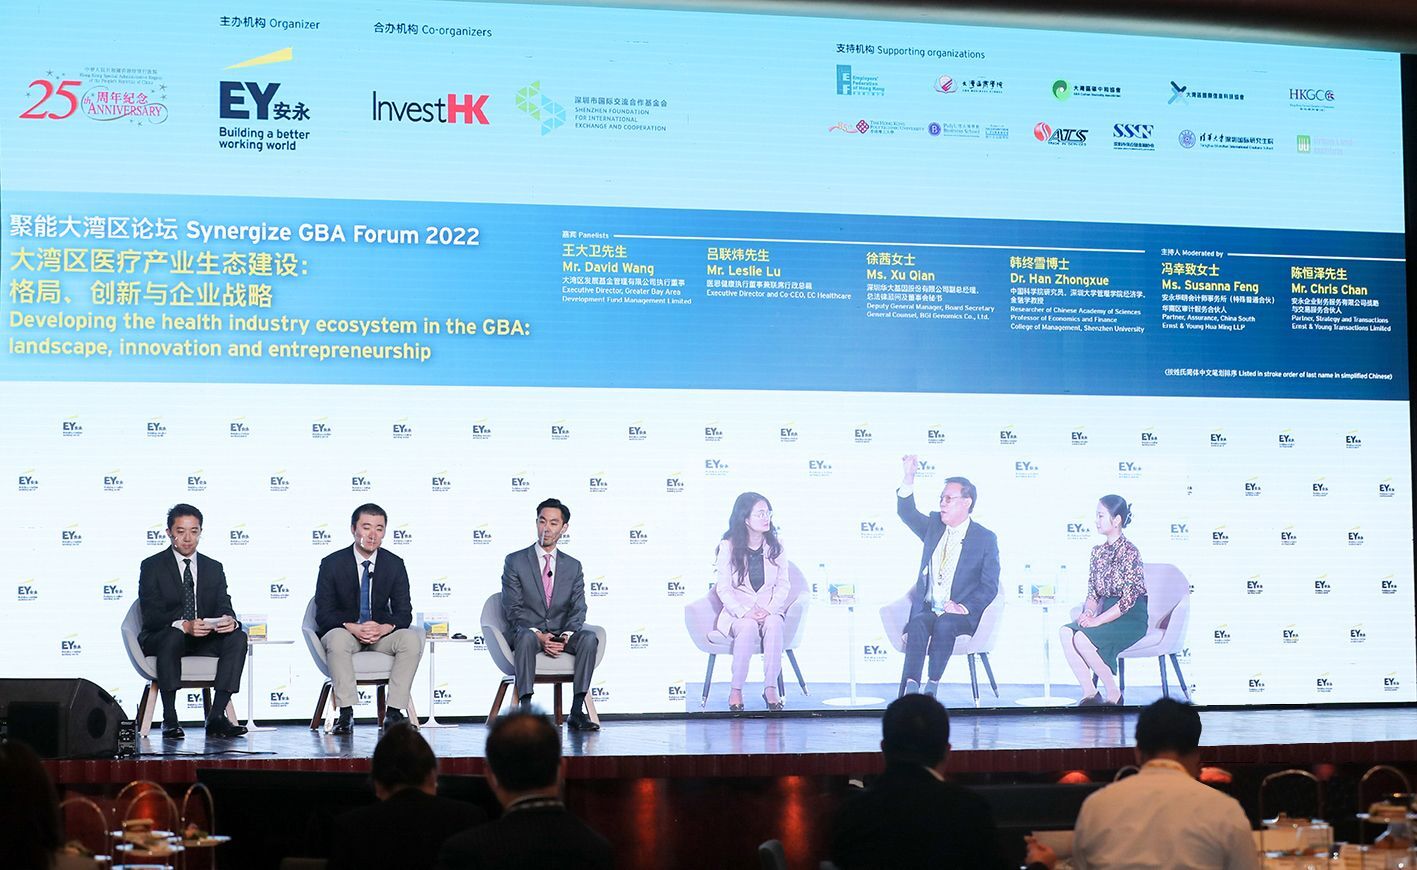 醫思健康聯席行政總裁呂聯煒先生作為演講嘉賓參與2022聚能大灣區論壇